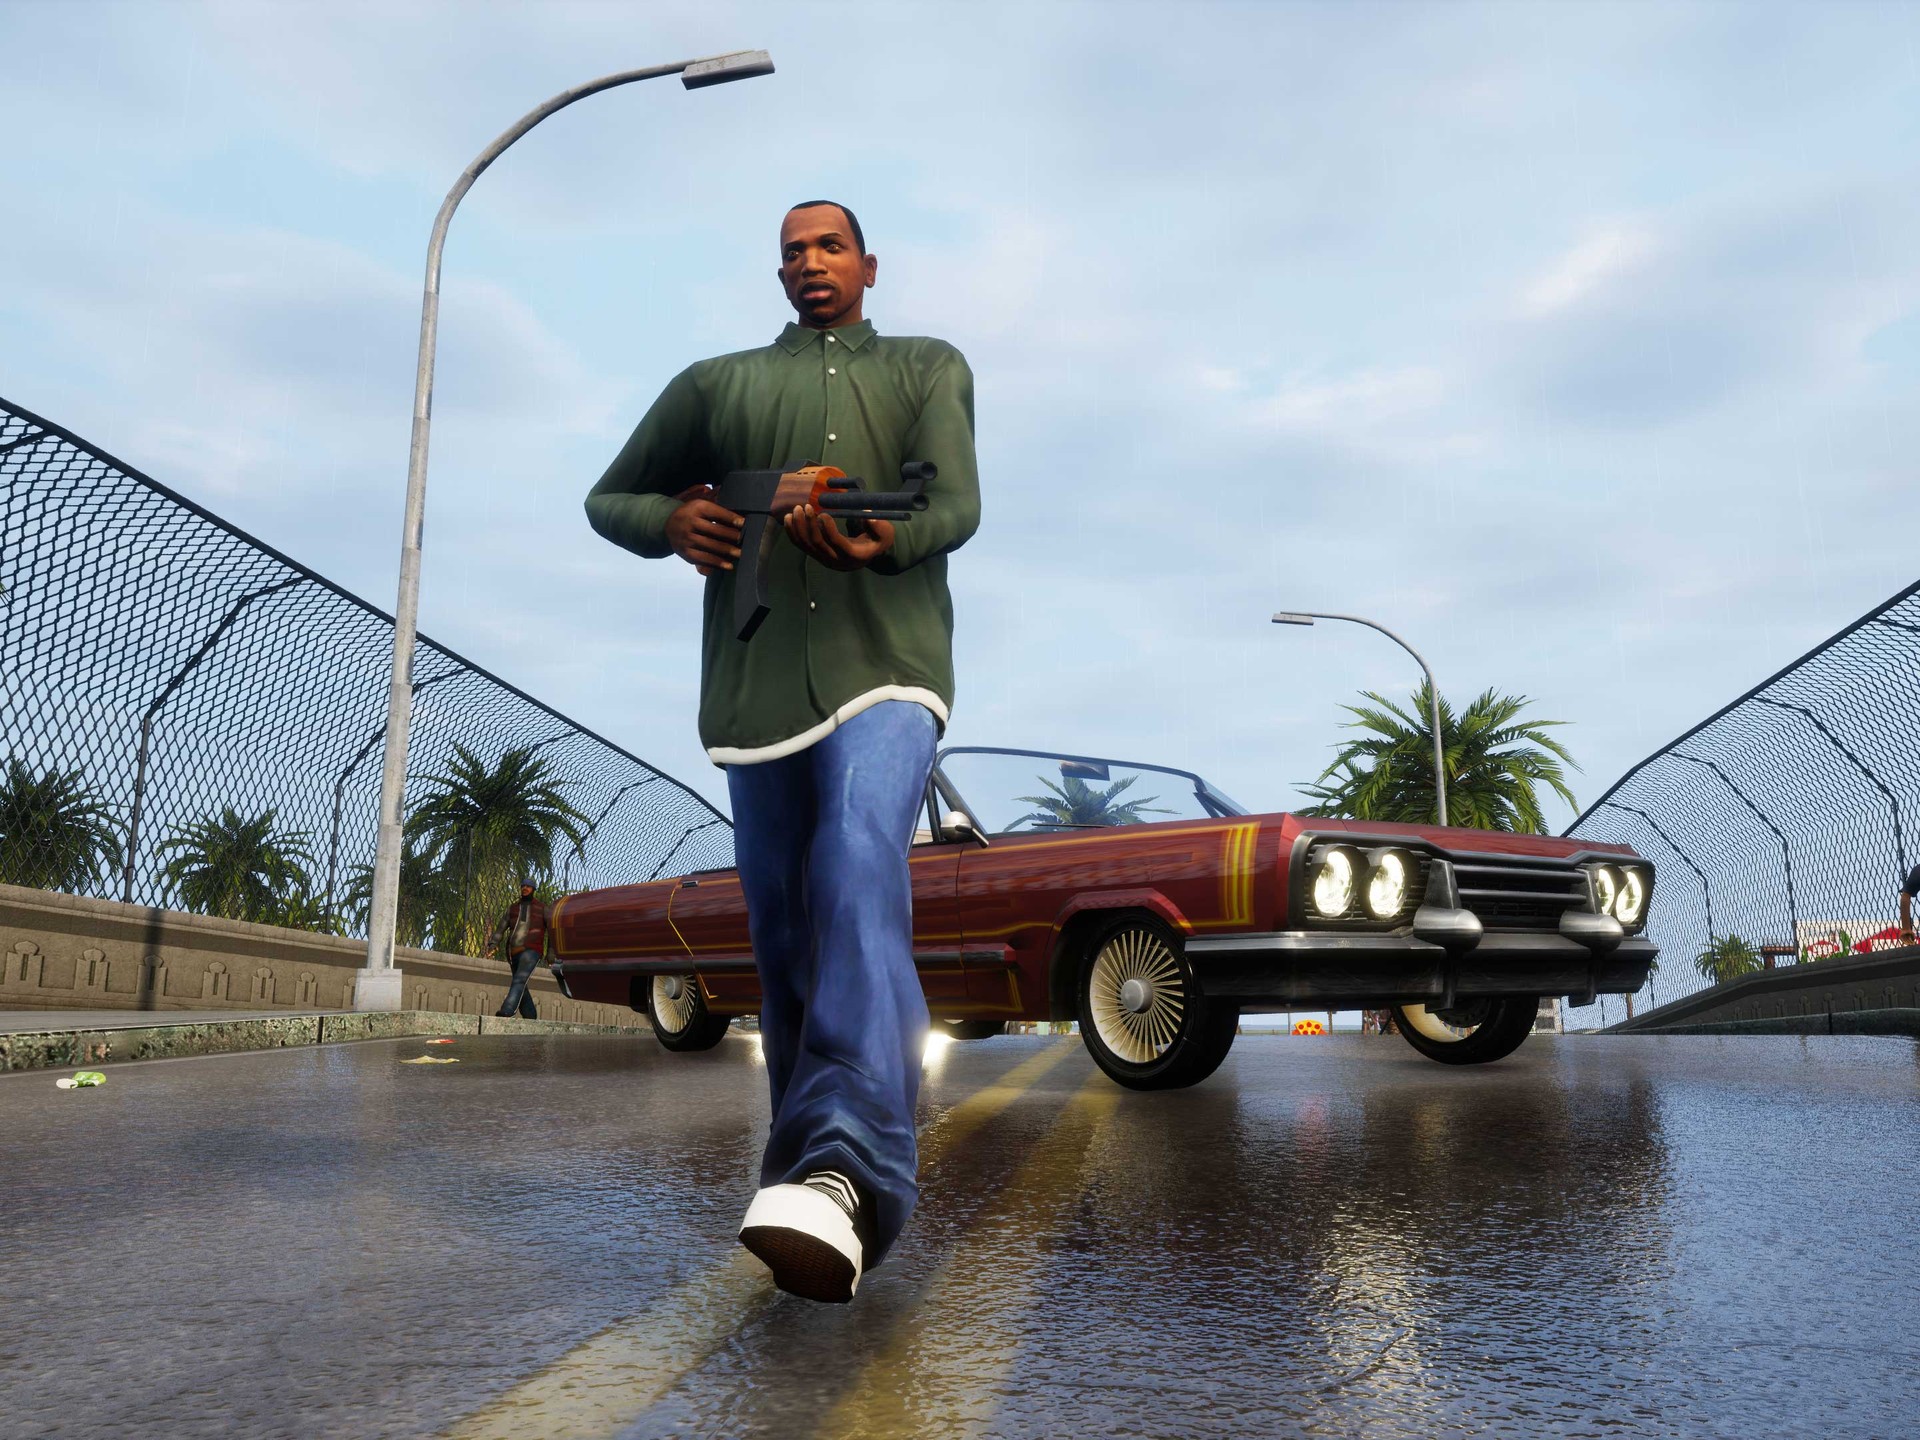 Rockstar oferece jogo gratuito para quem comprou GTA: Trilogy no PC